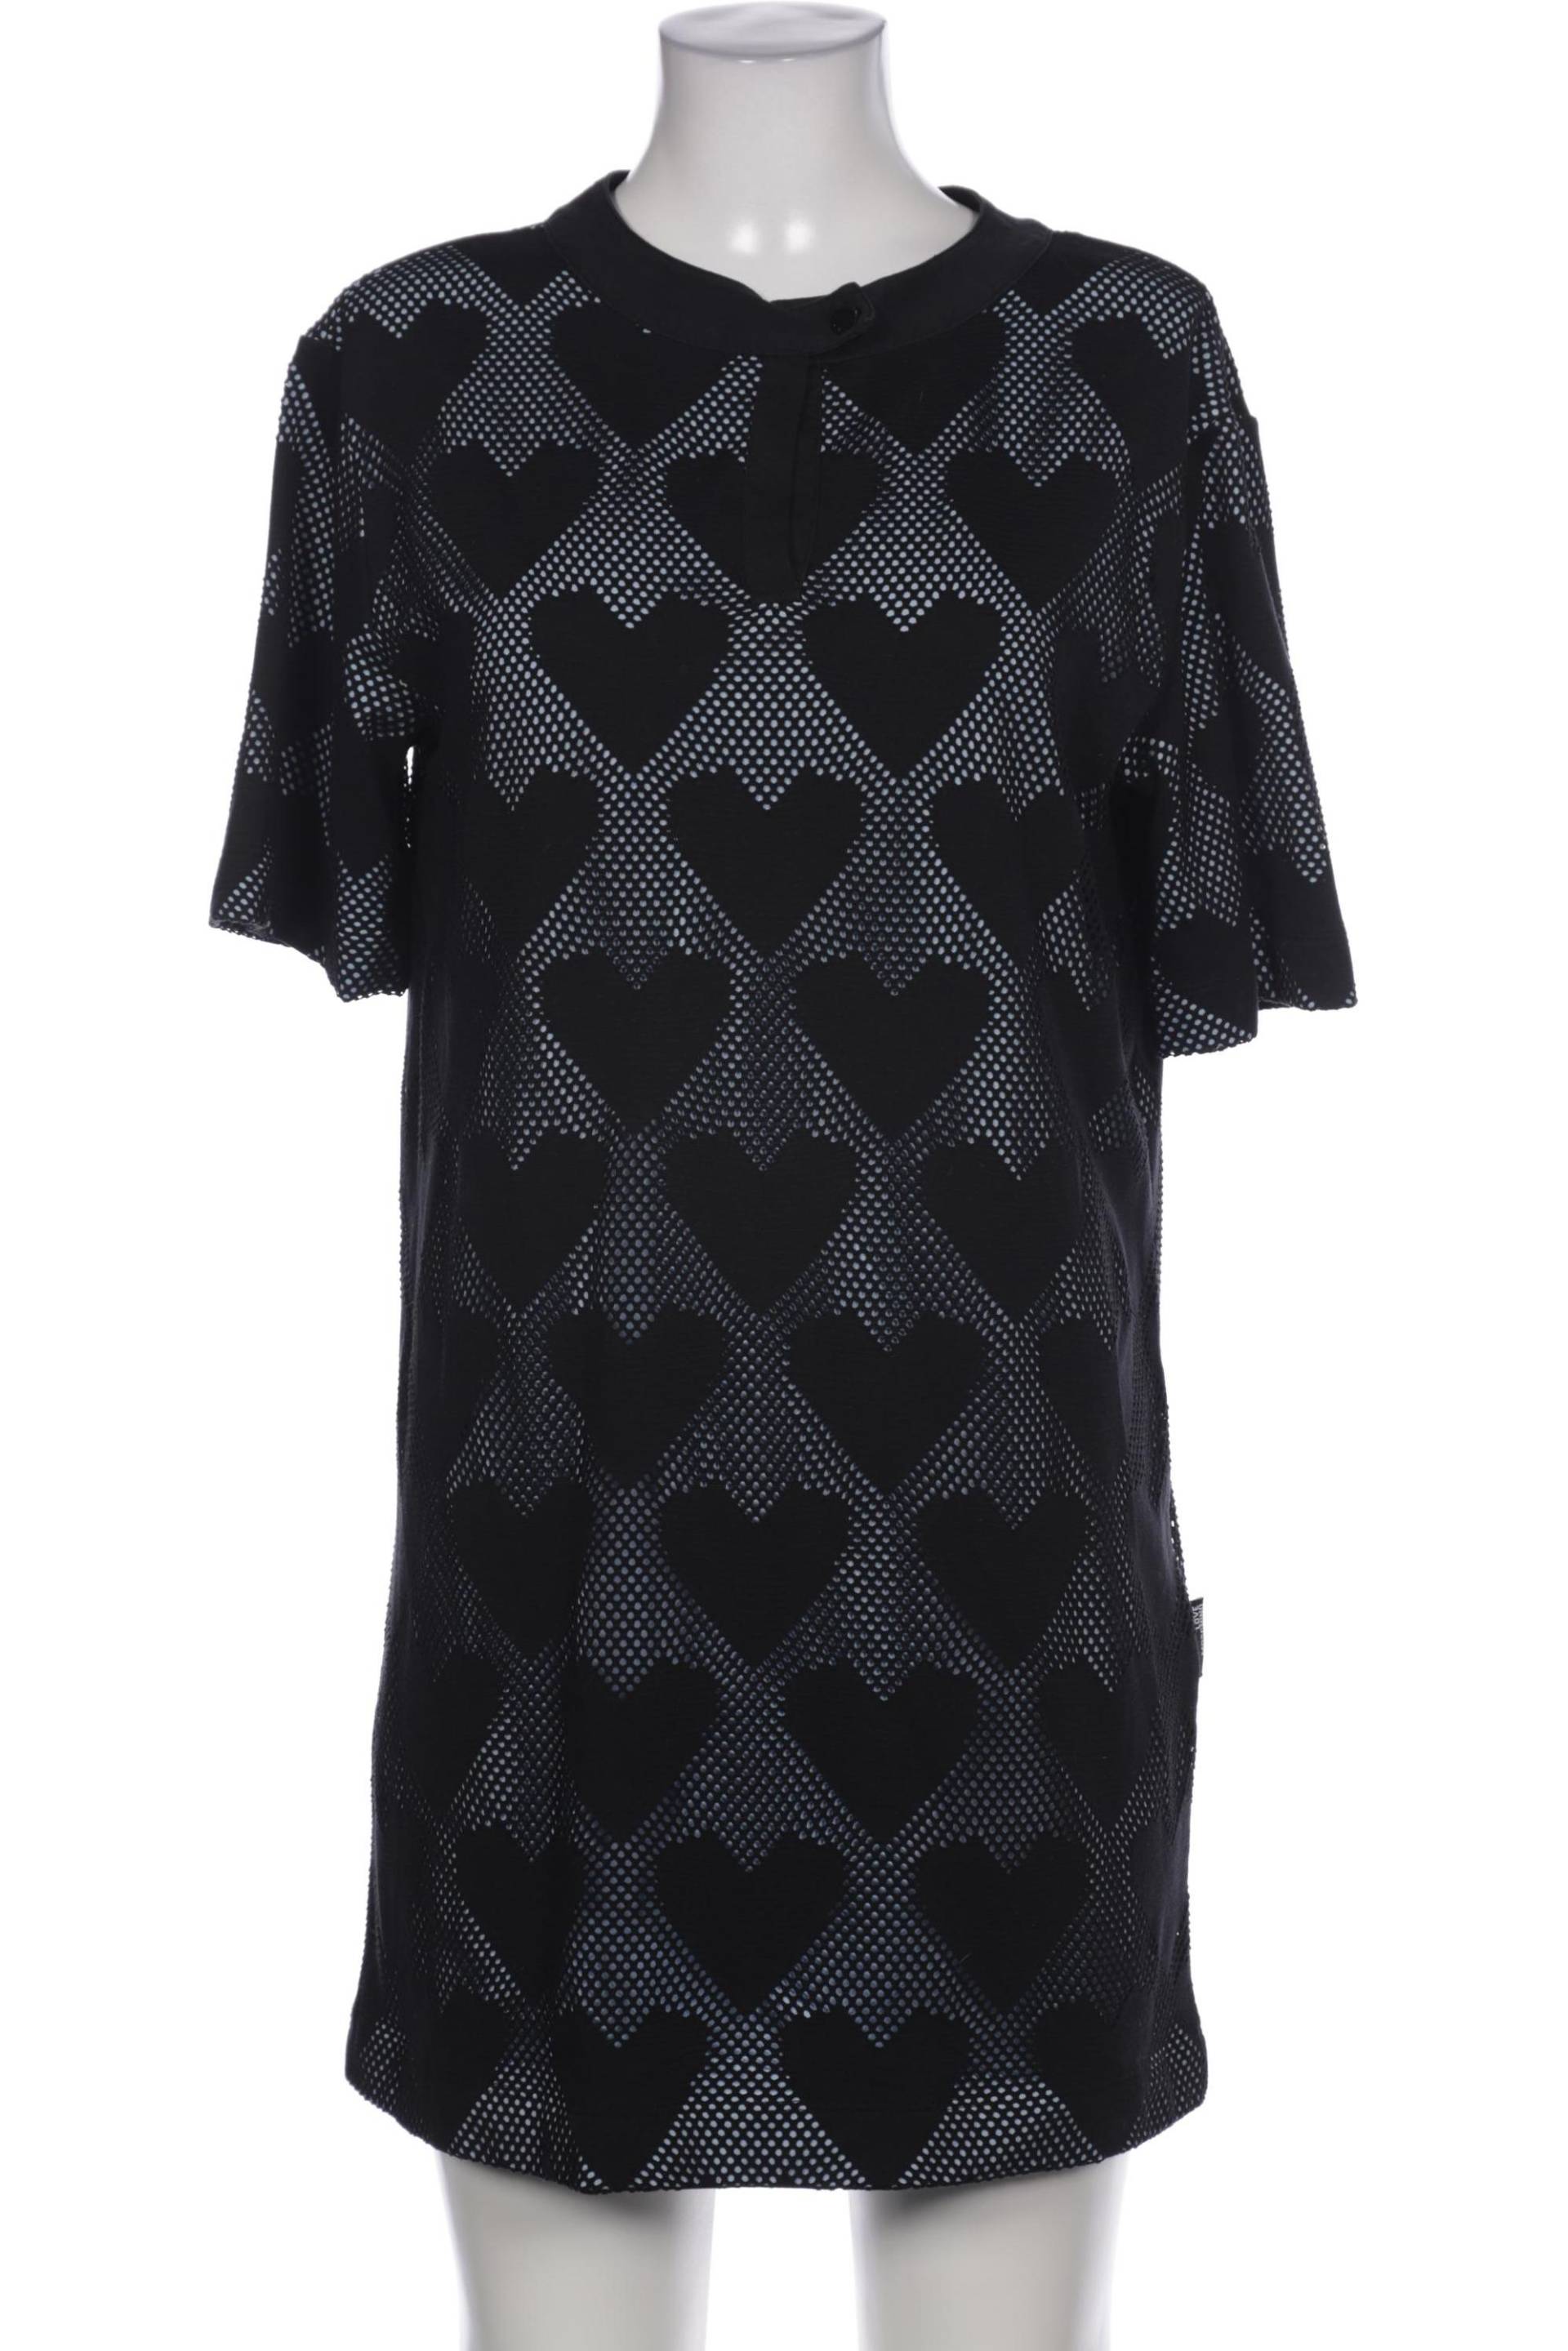 Love Moschino Damen Kleid, schwarz, Gr. 36 von Love Moschino